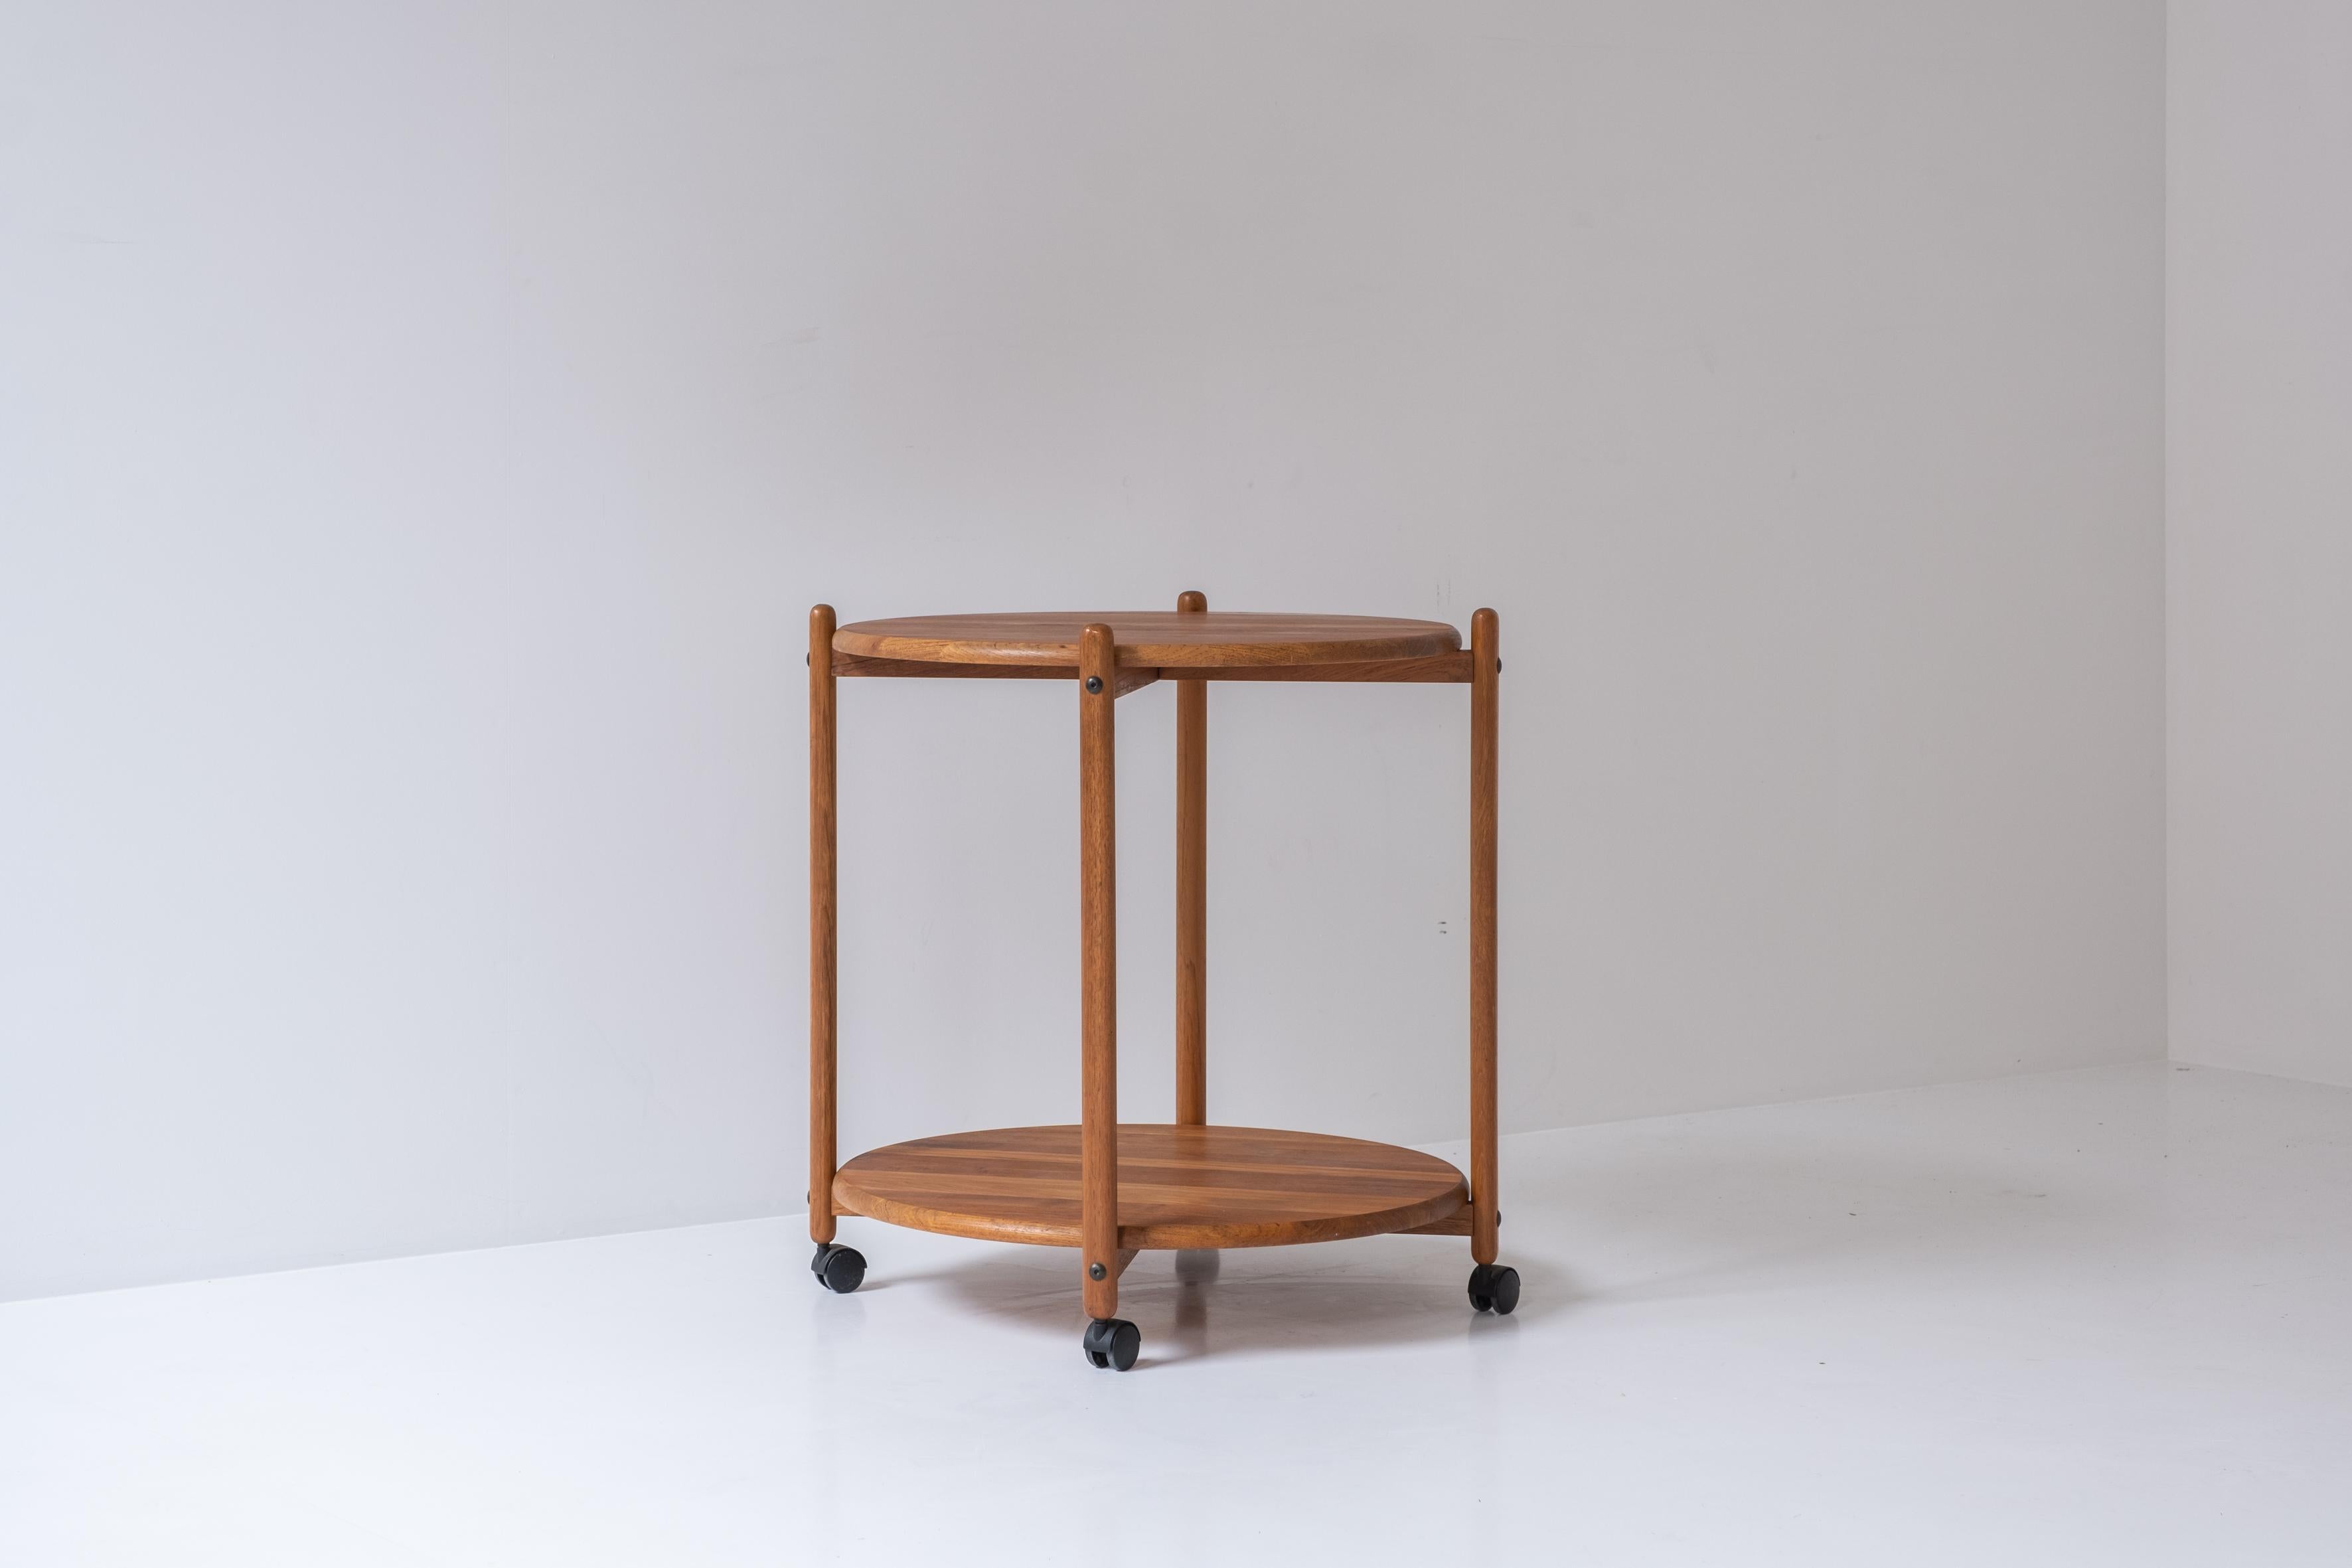 Scandinavian Modern Oak Tray Table from Denmark, Designed in the 1960s